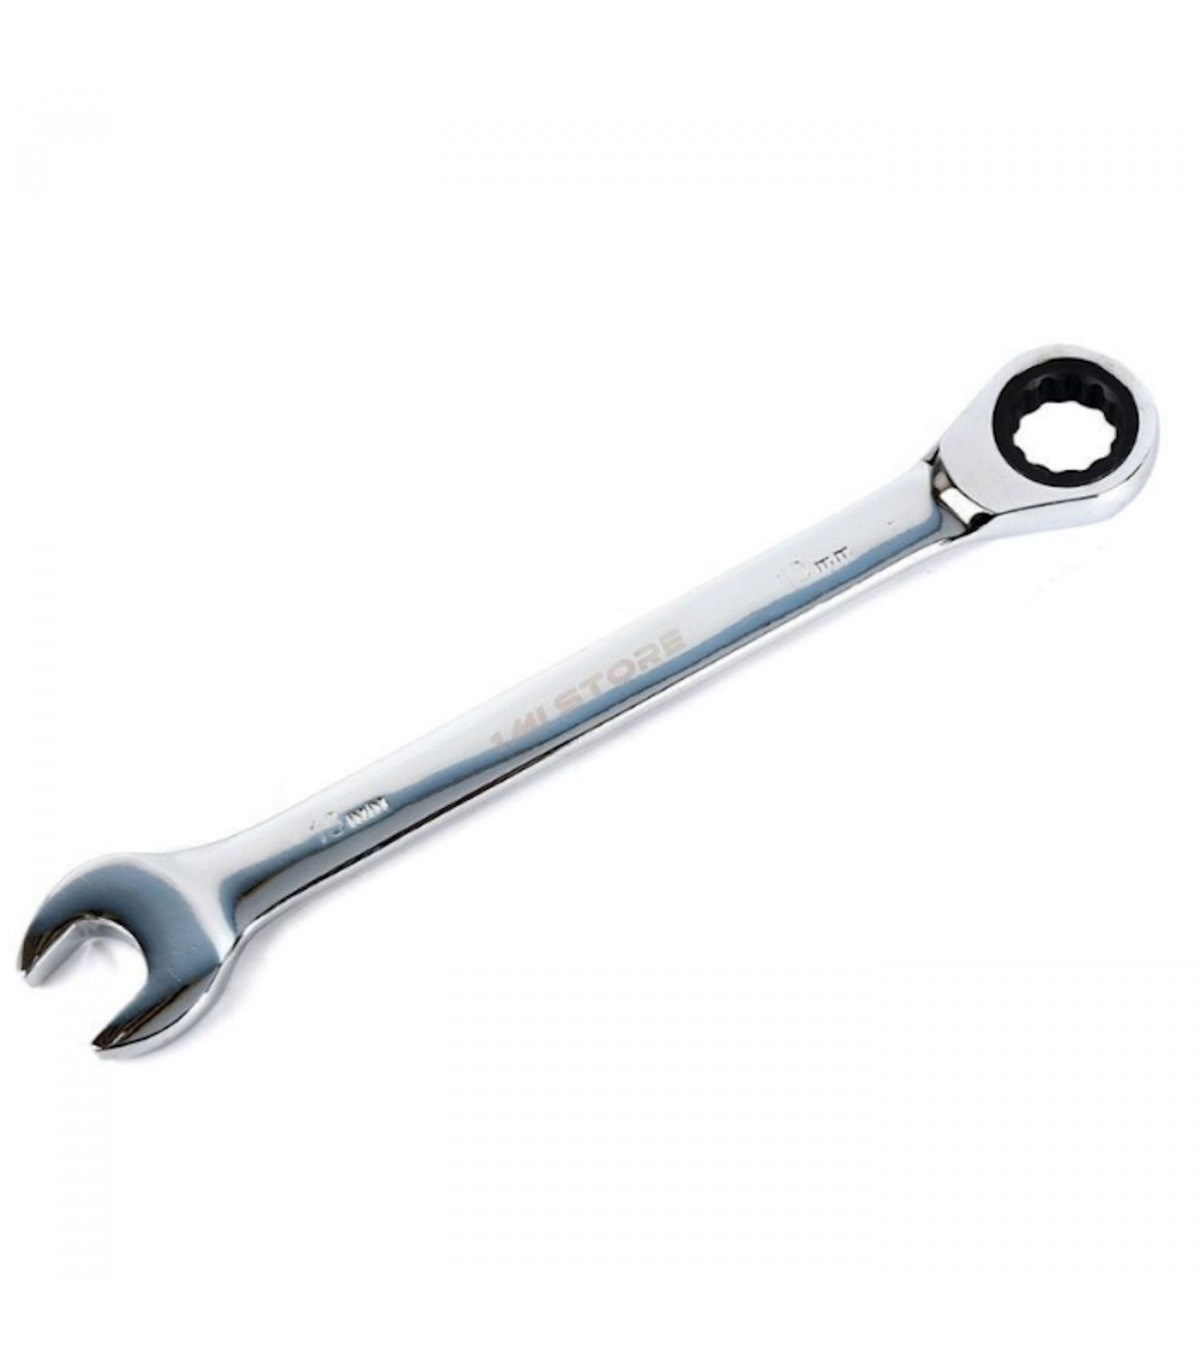 Llave de carraca + llave inglesa de 0,17 cm, para funciones de mecánica o  bricolaje, con medidas de 22,5 x 1,5 x 0,2 cm. Herrami